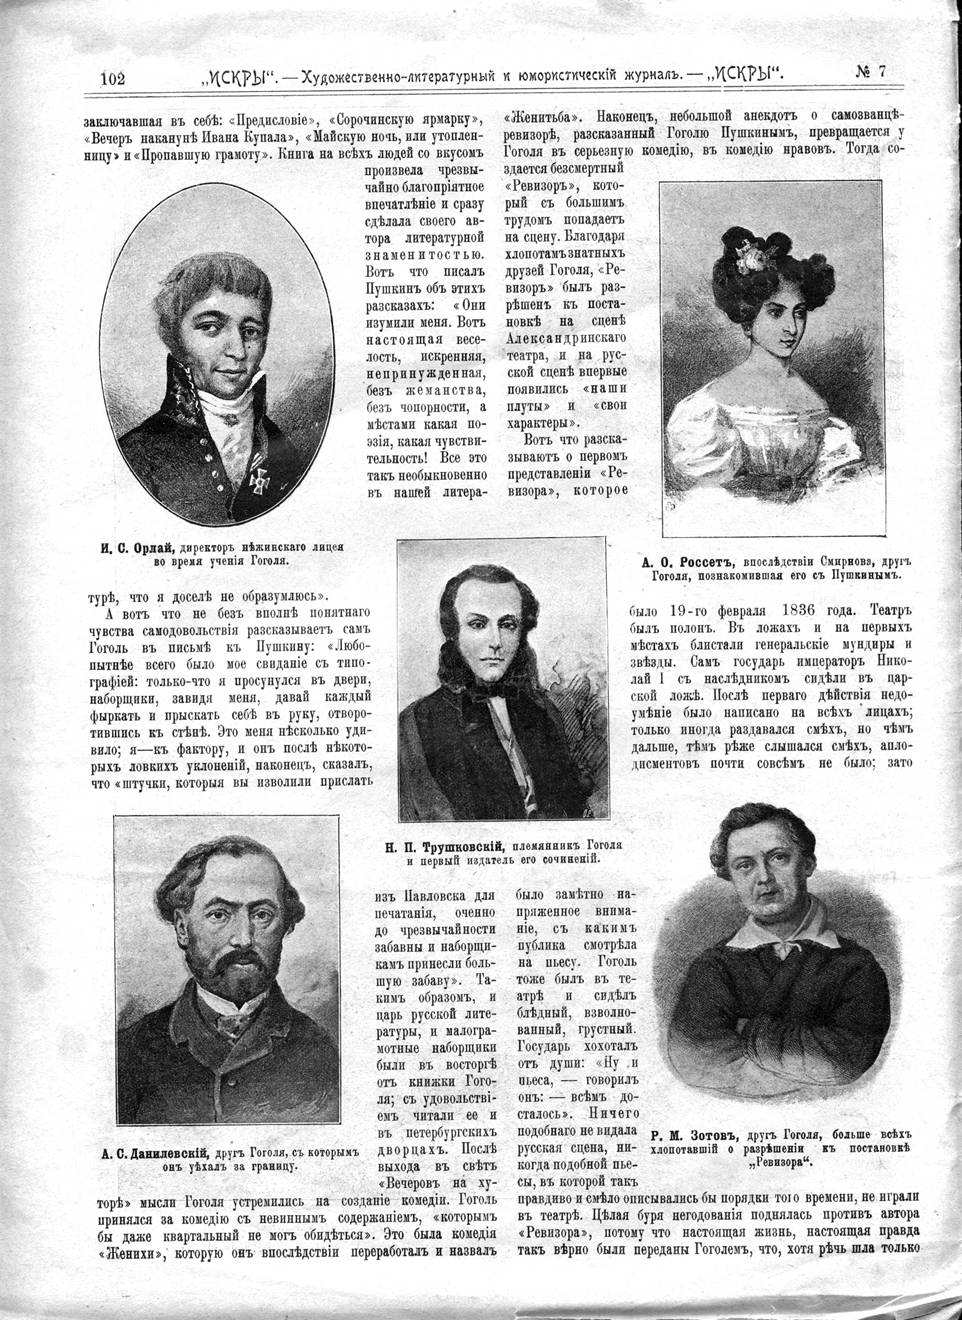 журнал &quot;Искры&quot; №7 от 1902, посвящён Гоголю